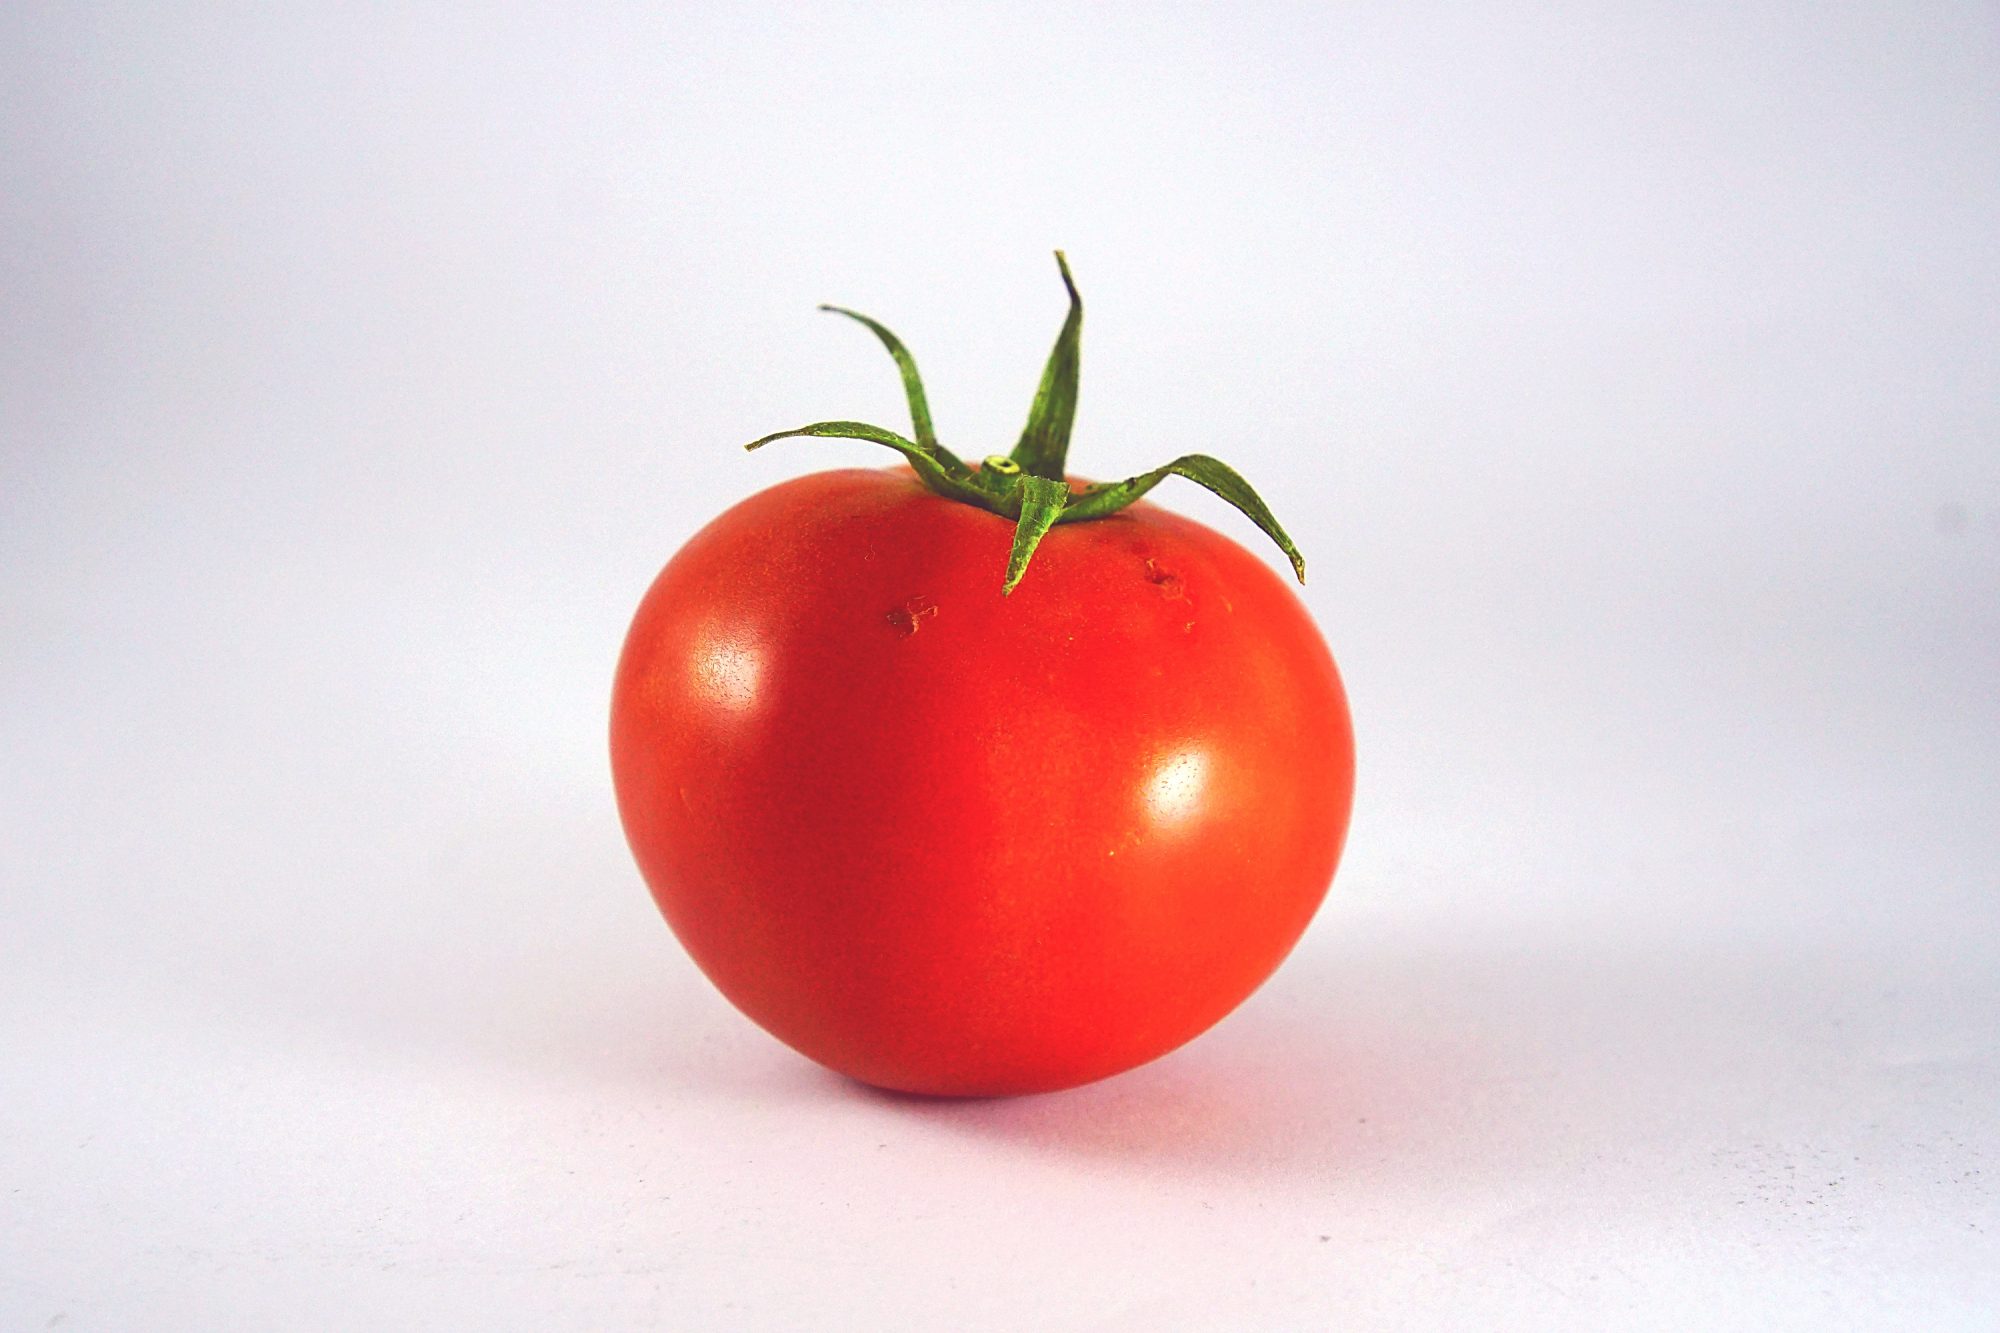 Tomato Getty 4/20/20